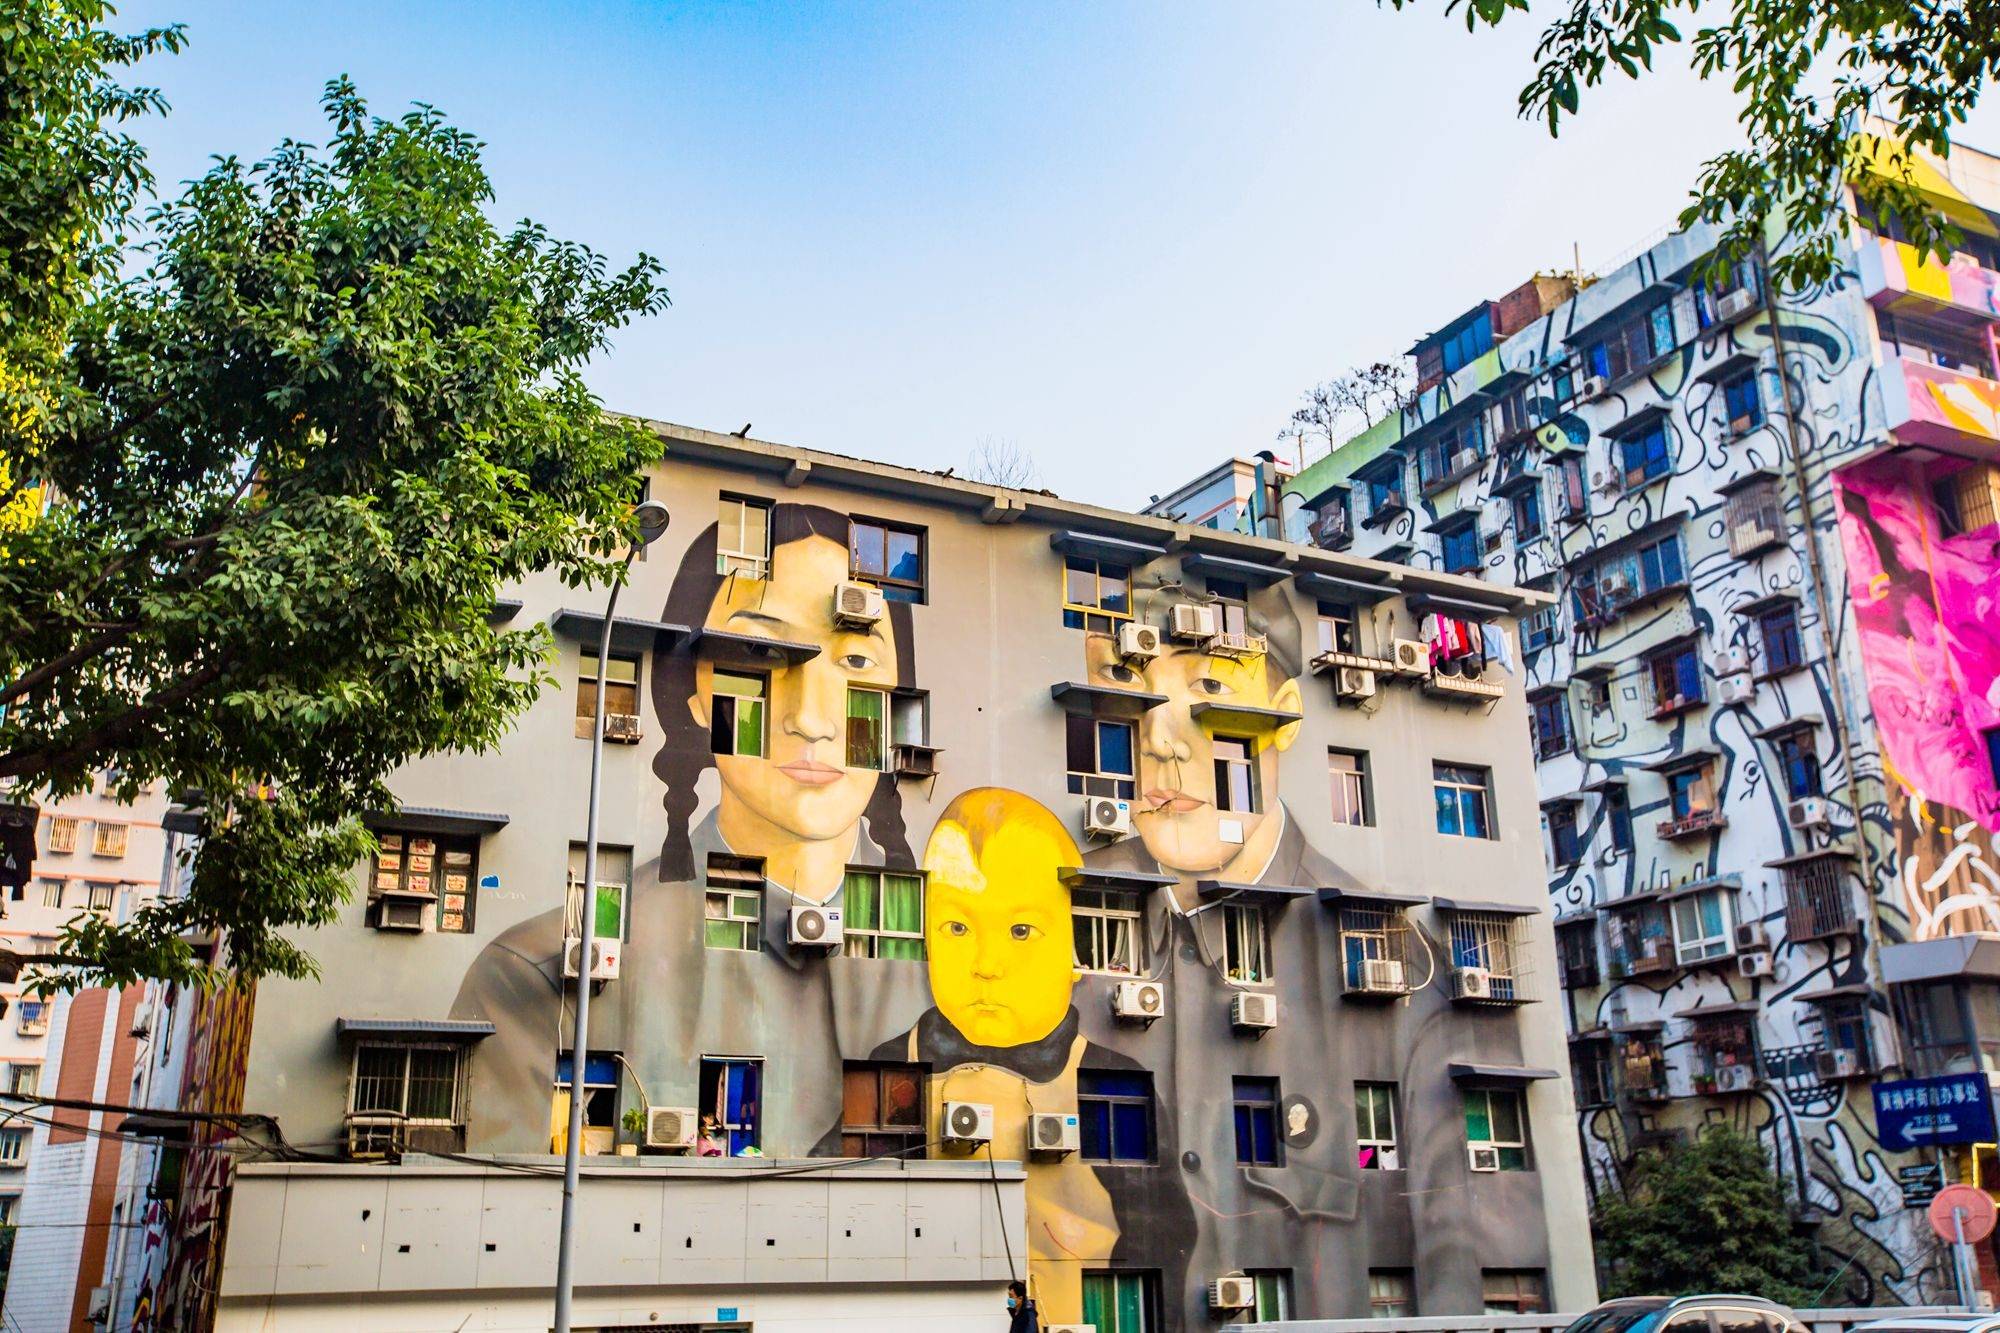 重庆涂鸦一条街攻略图片